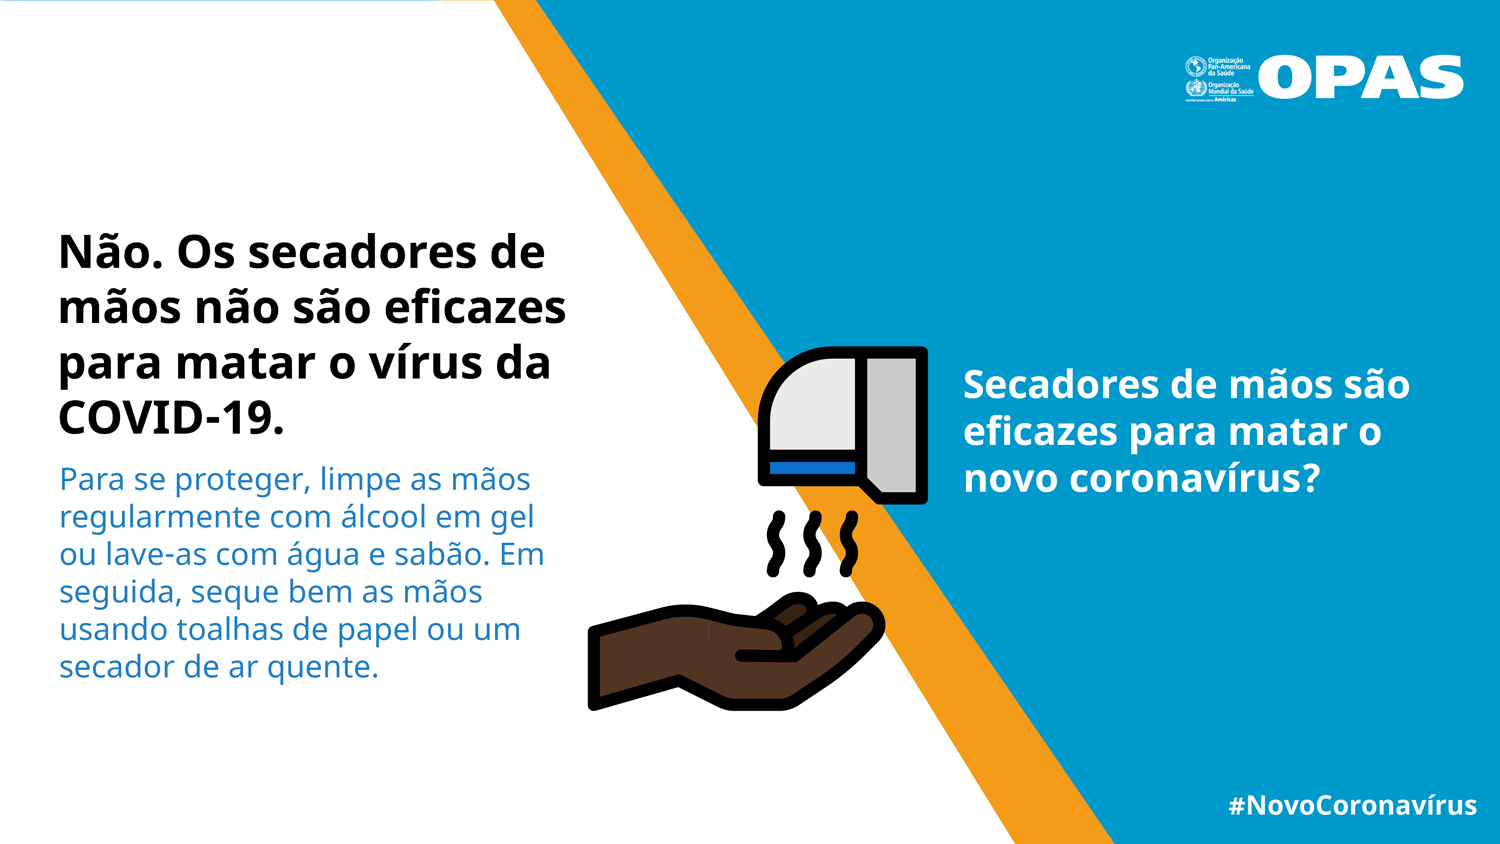  Os secadores de mãos não são eficazes para matar o vírus da COVID-19.